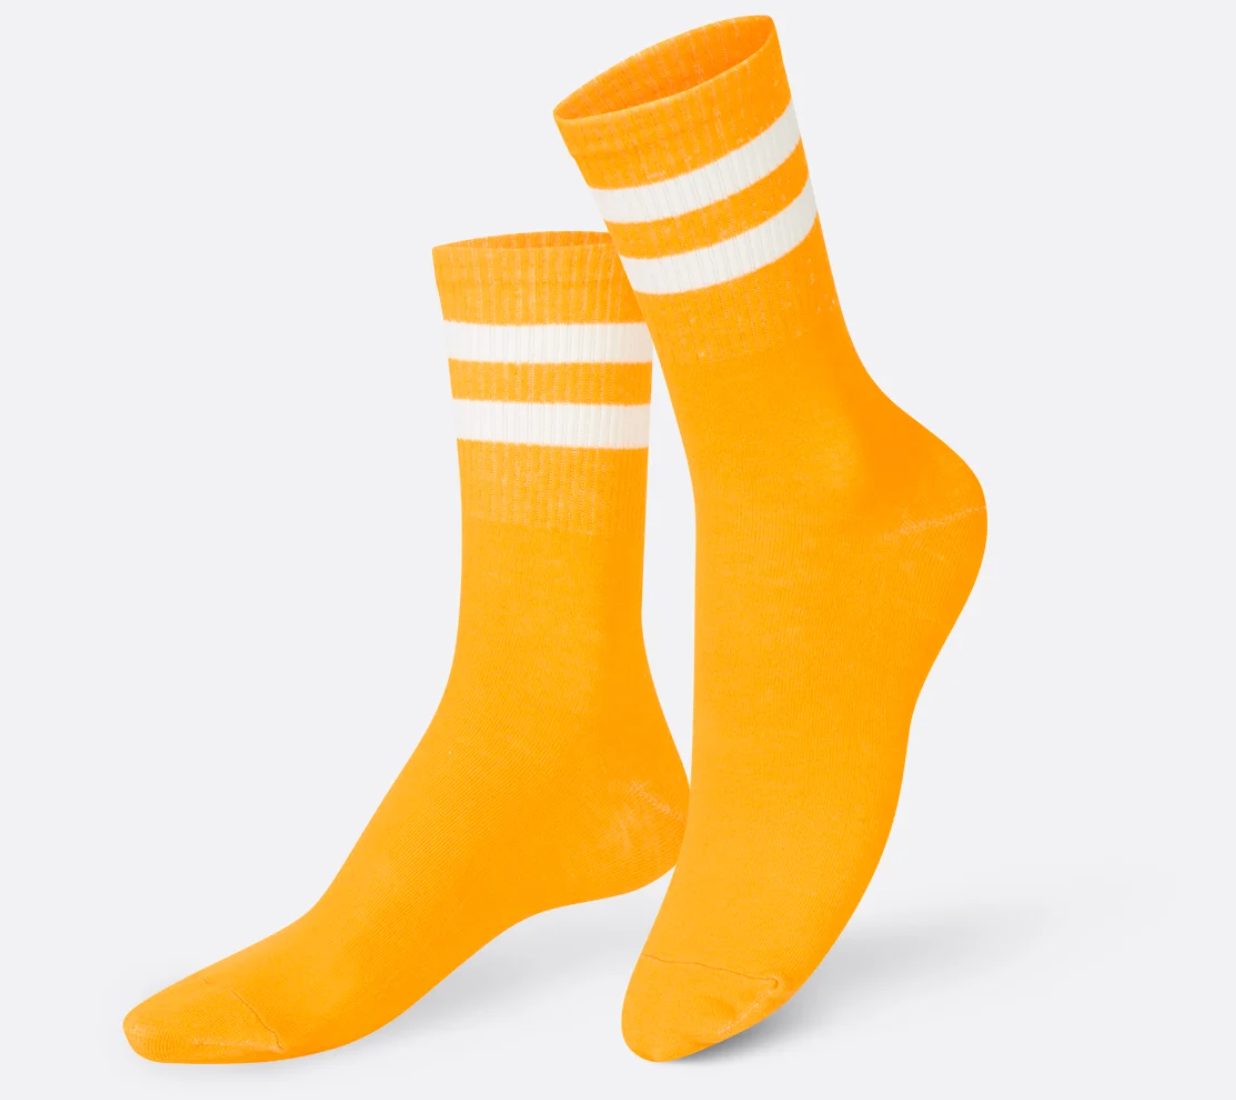 Eat My Socks – Ketchup Mustard (2 pairs of Socks)